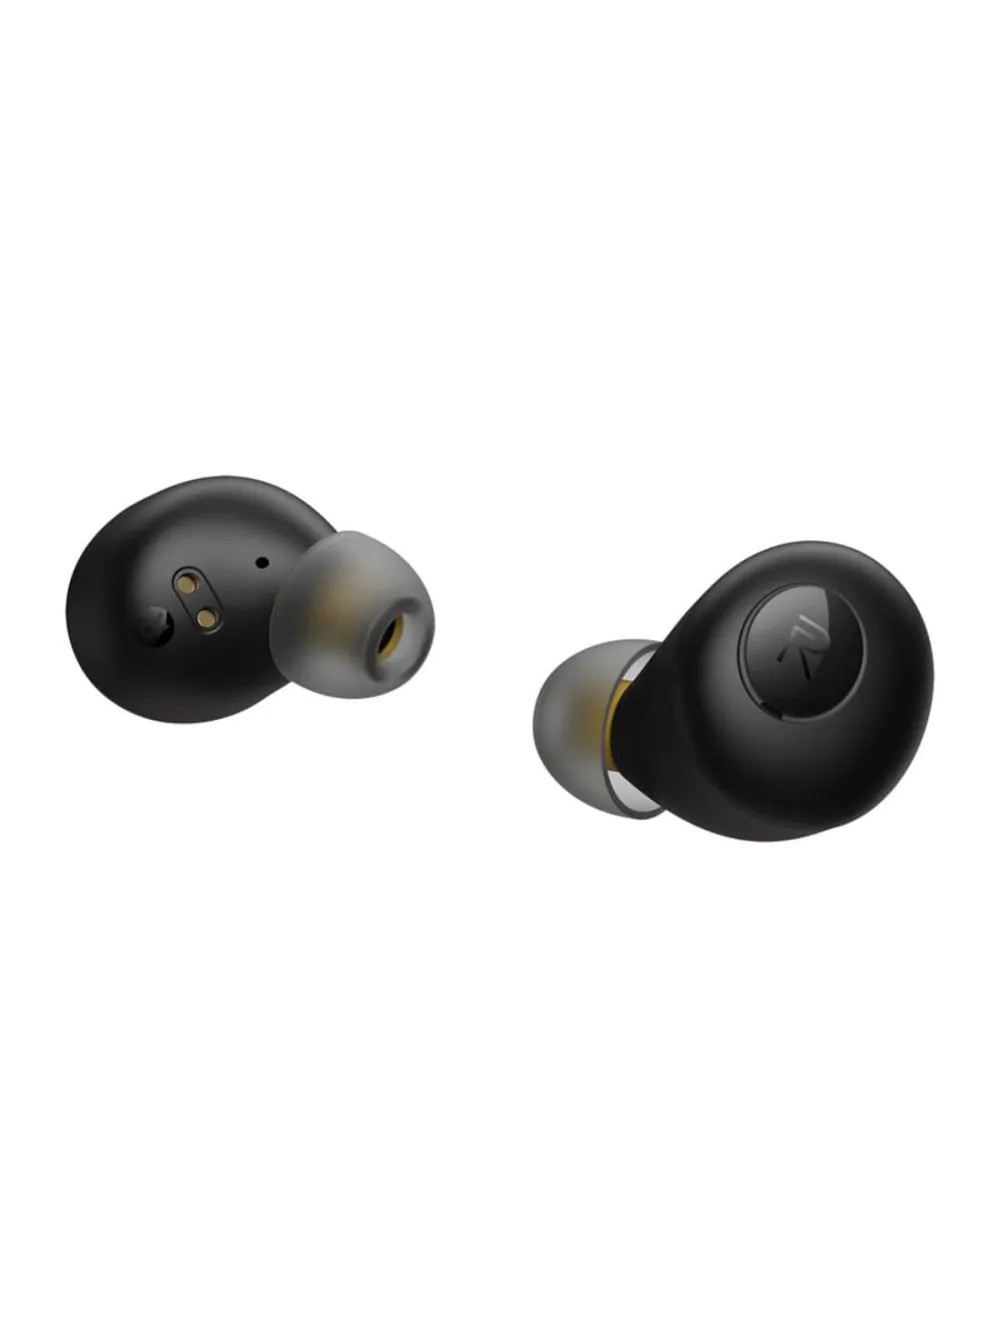 Realme Buds Q in-Ear True Wireless Earbuds (Black)